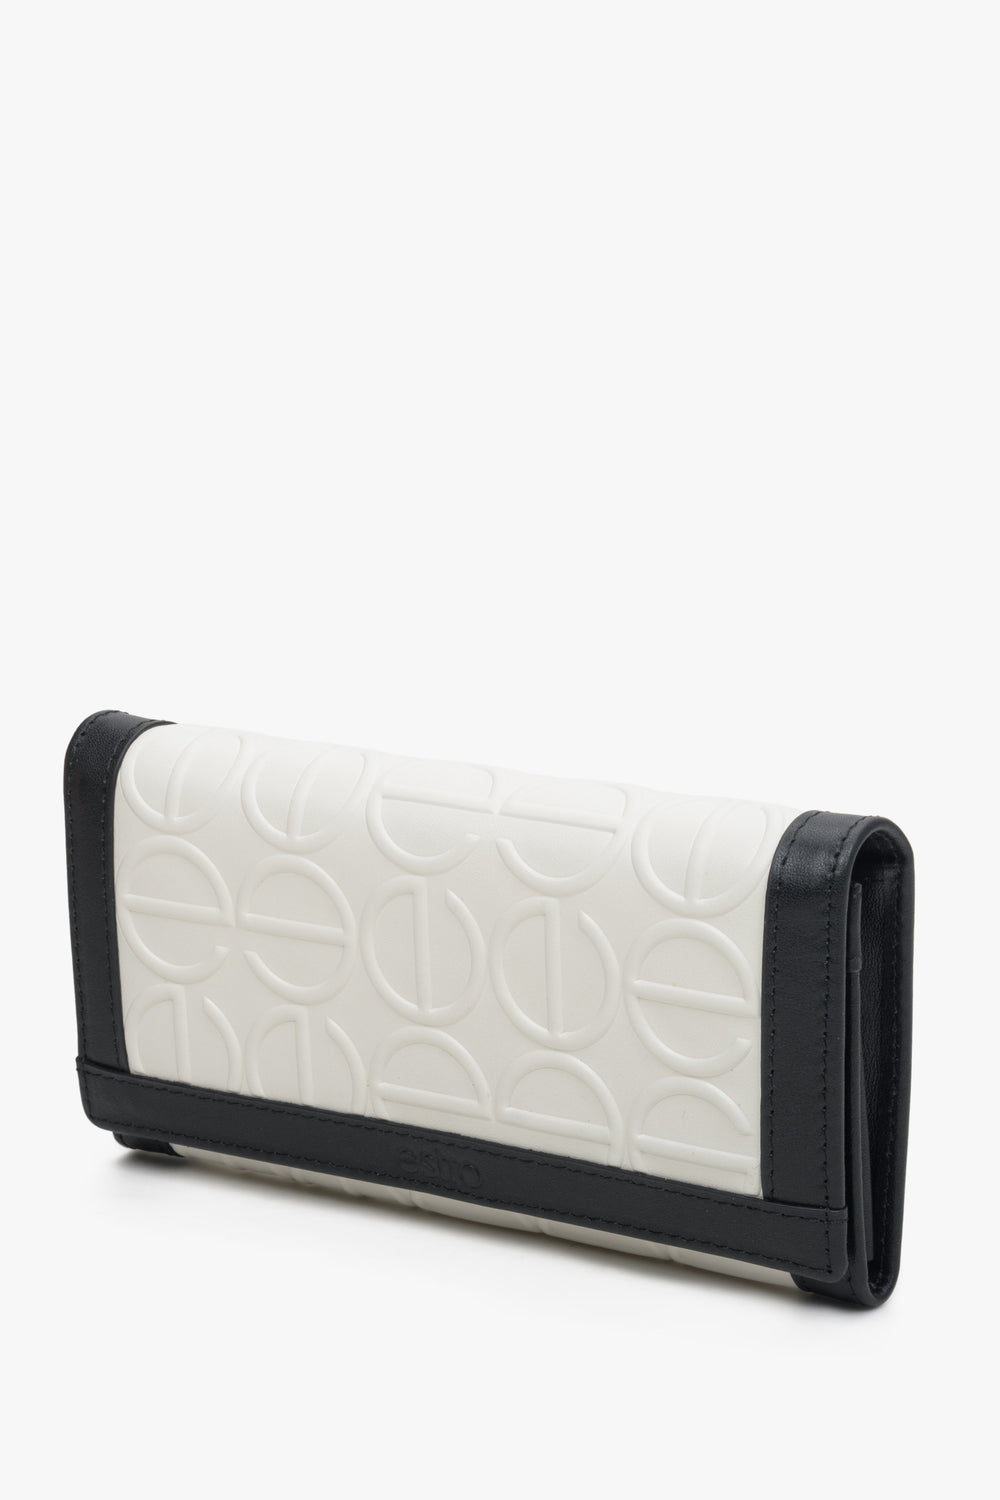 Duży, skórzany portfel damski biało-czarny marki Estro.